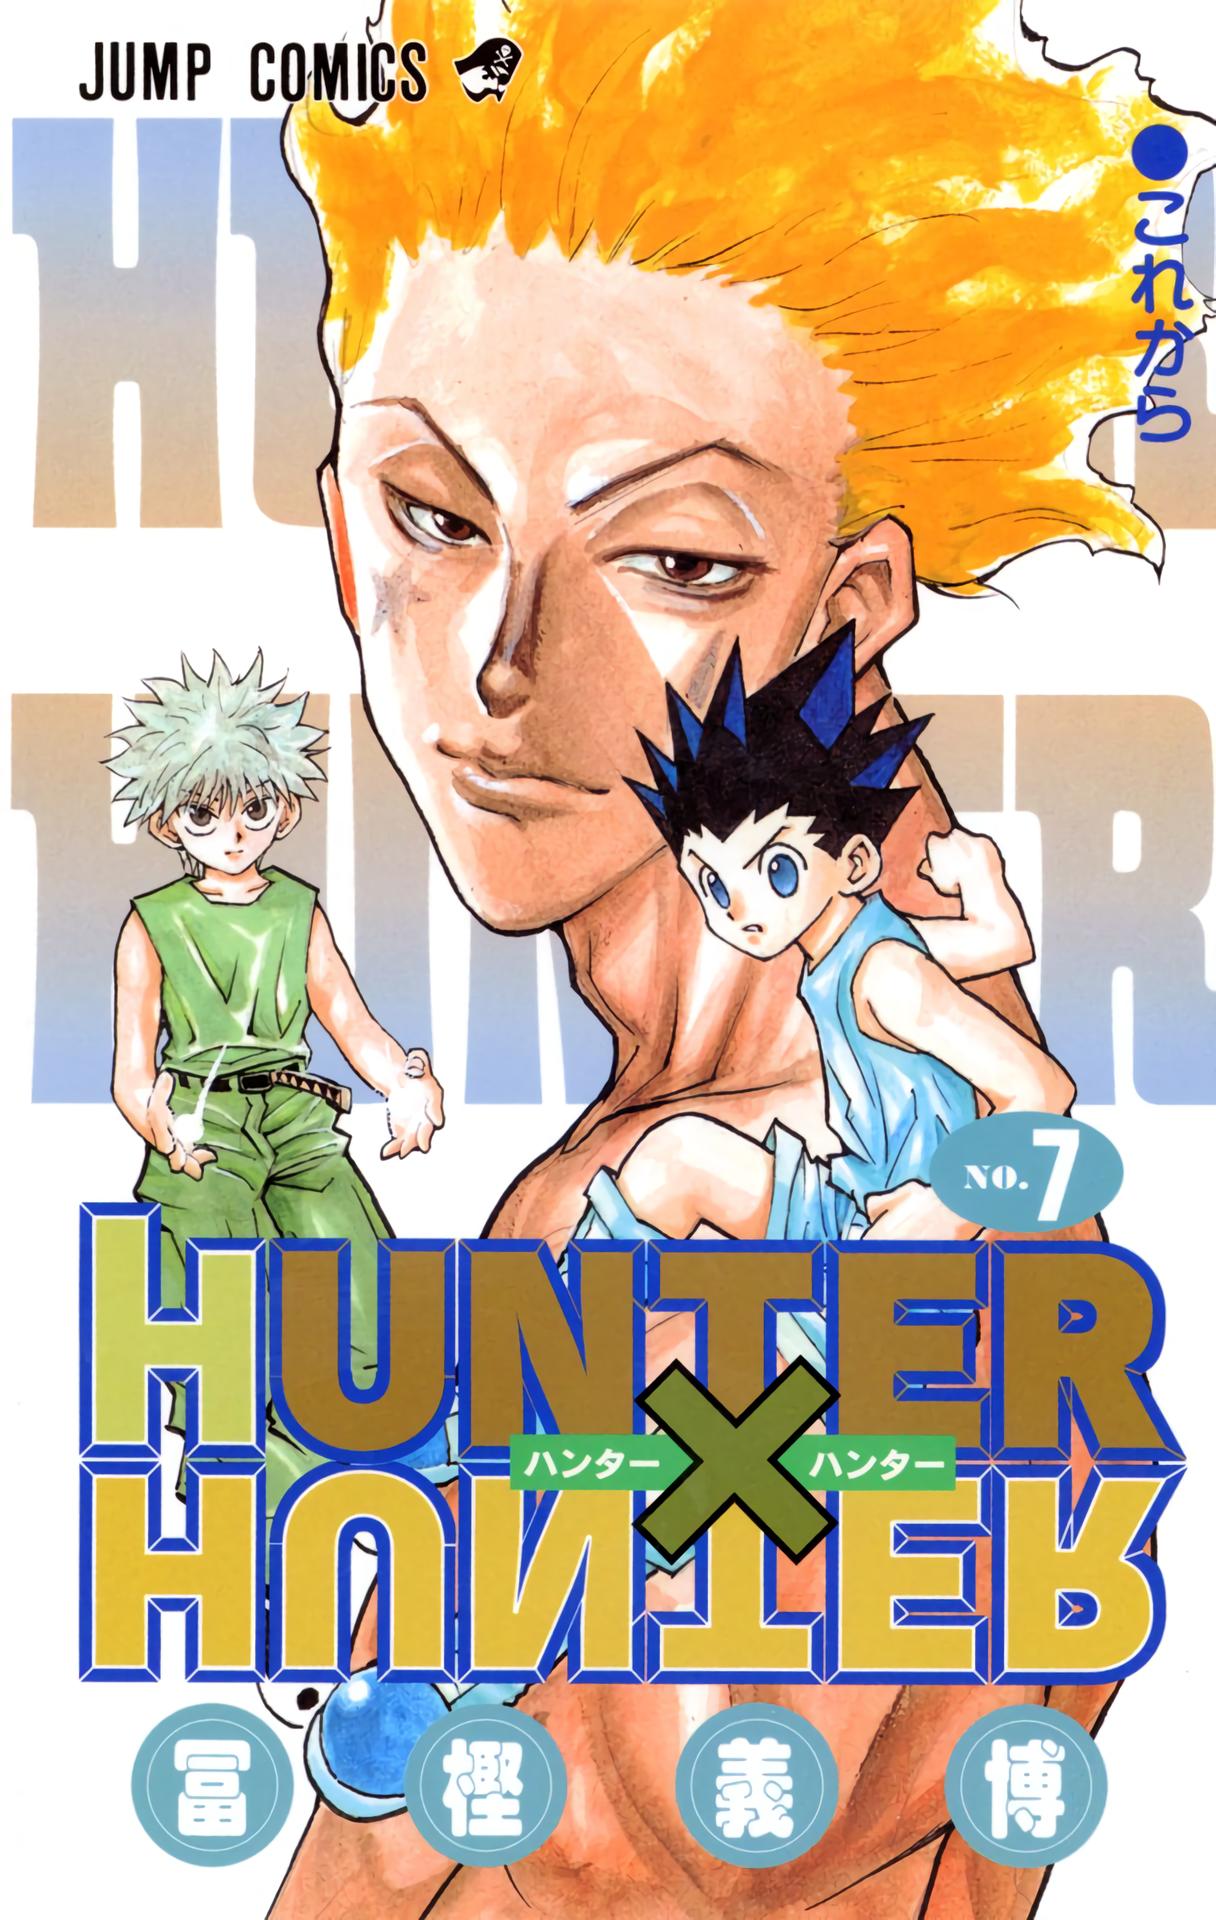 Hunter X Hunter, Chapter 55 - Hunter X Hunter Manga Online